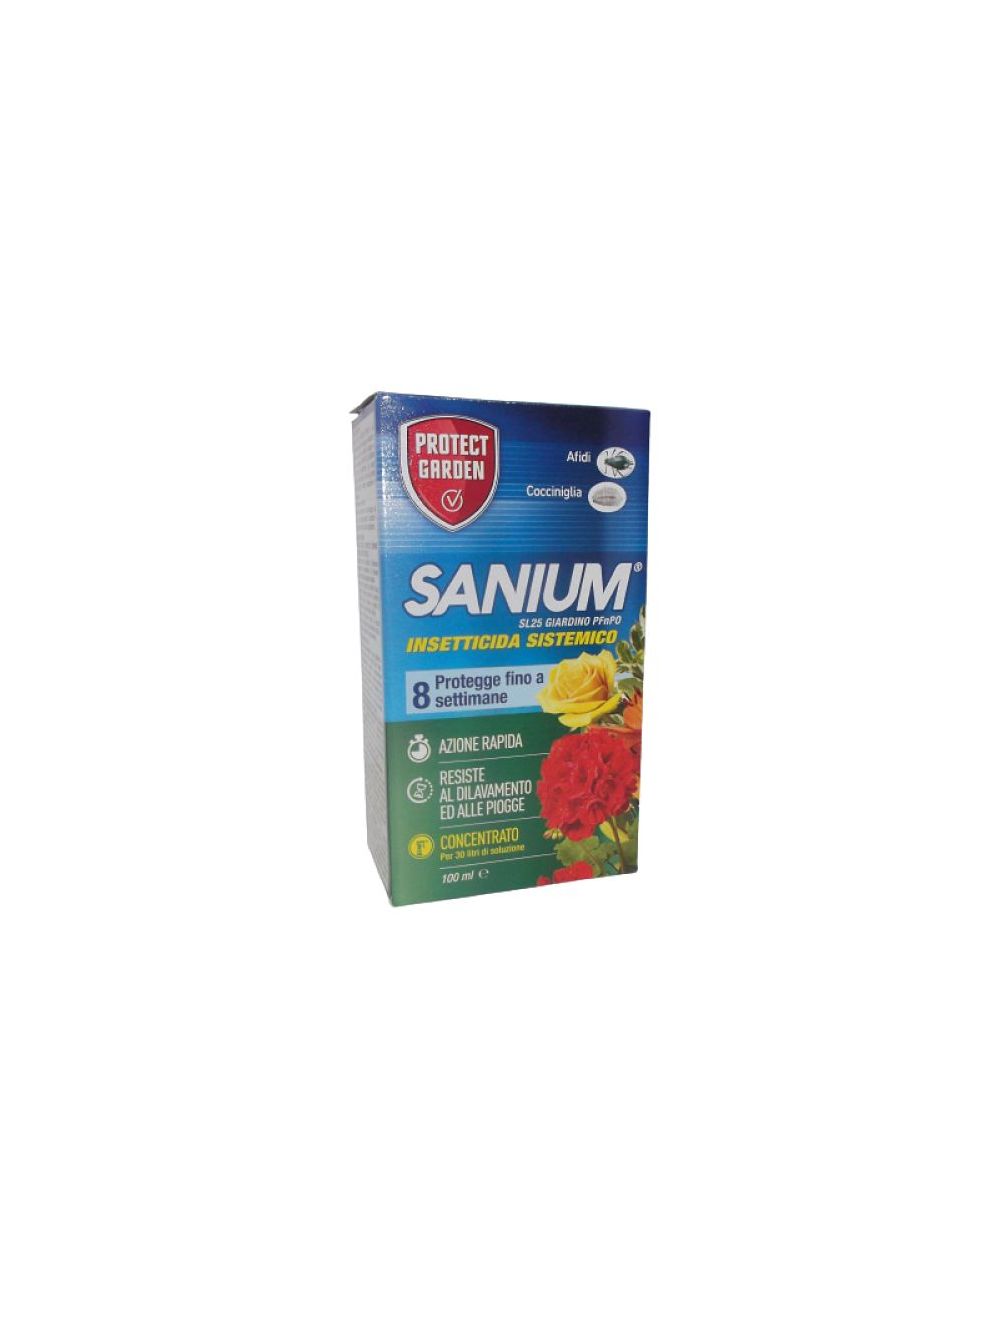 Sanium SL 25 insetticida sistemico 100 ml. - Agraria Comand